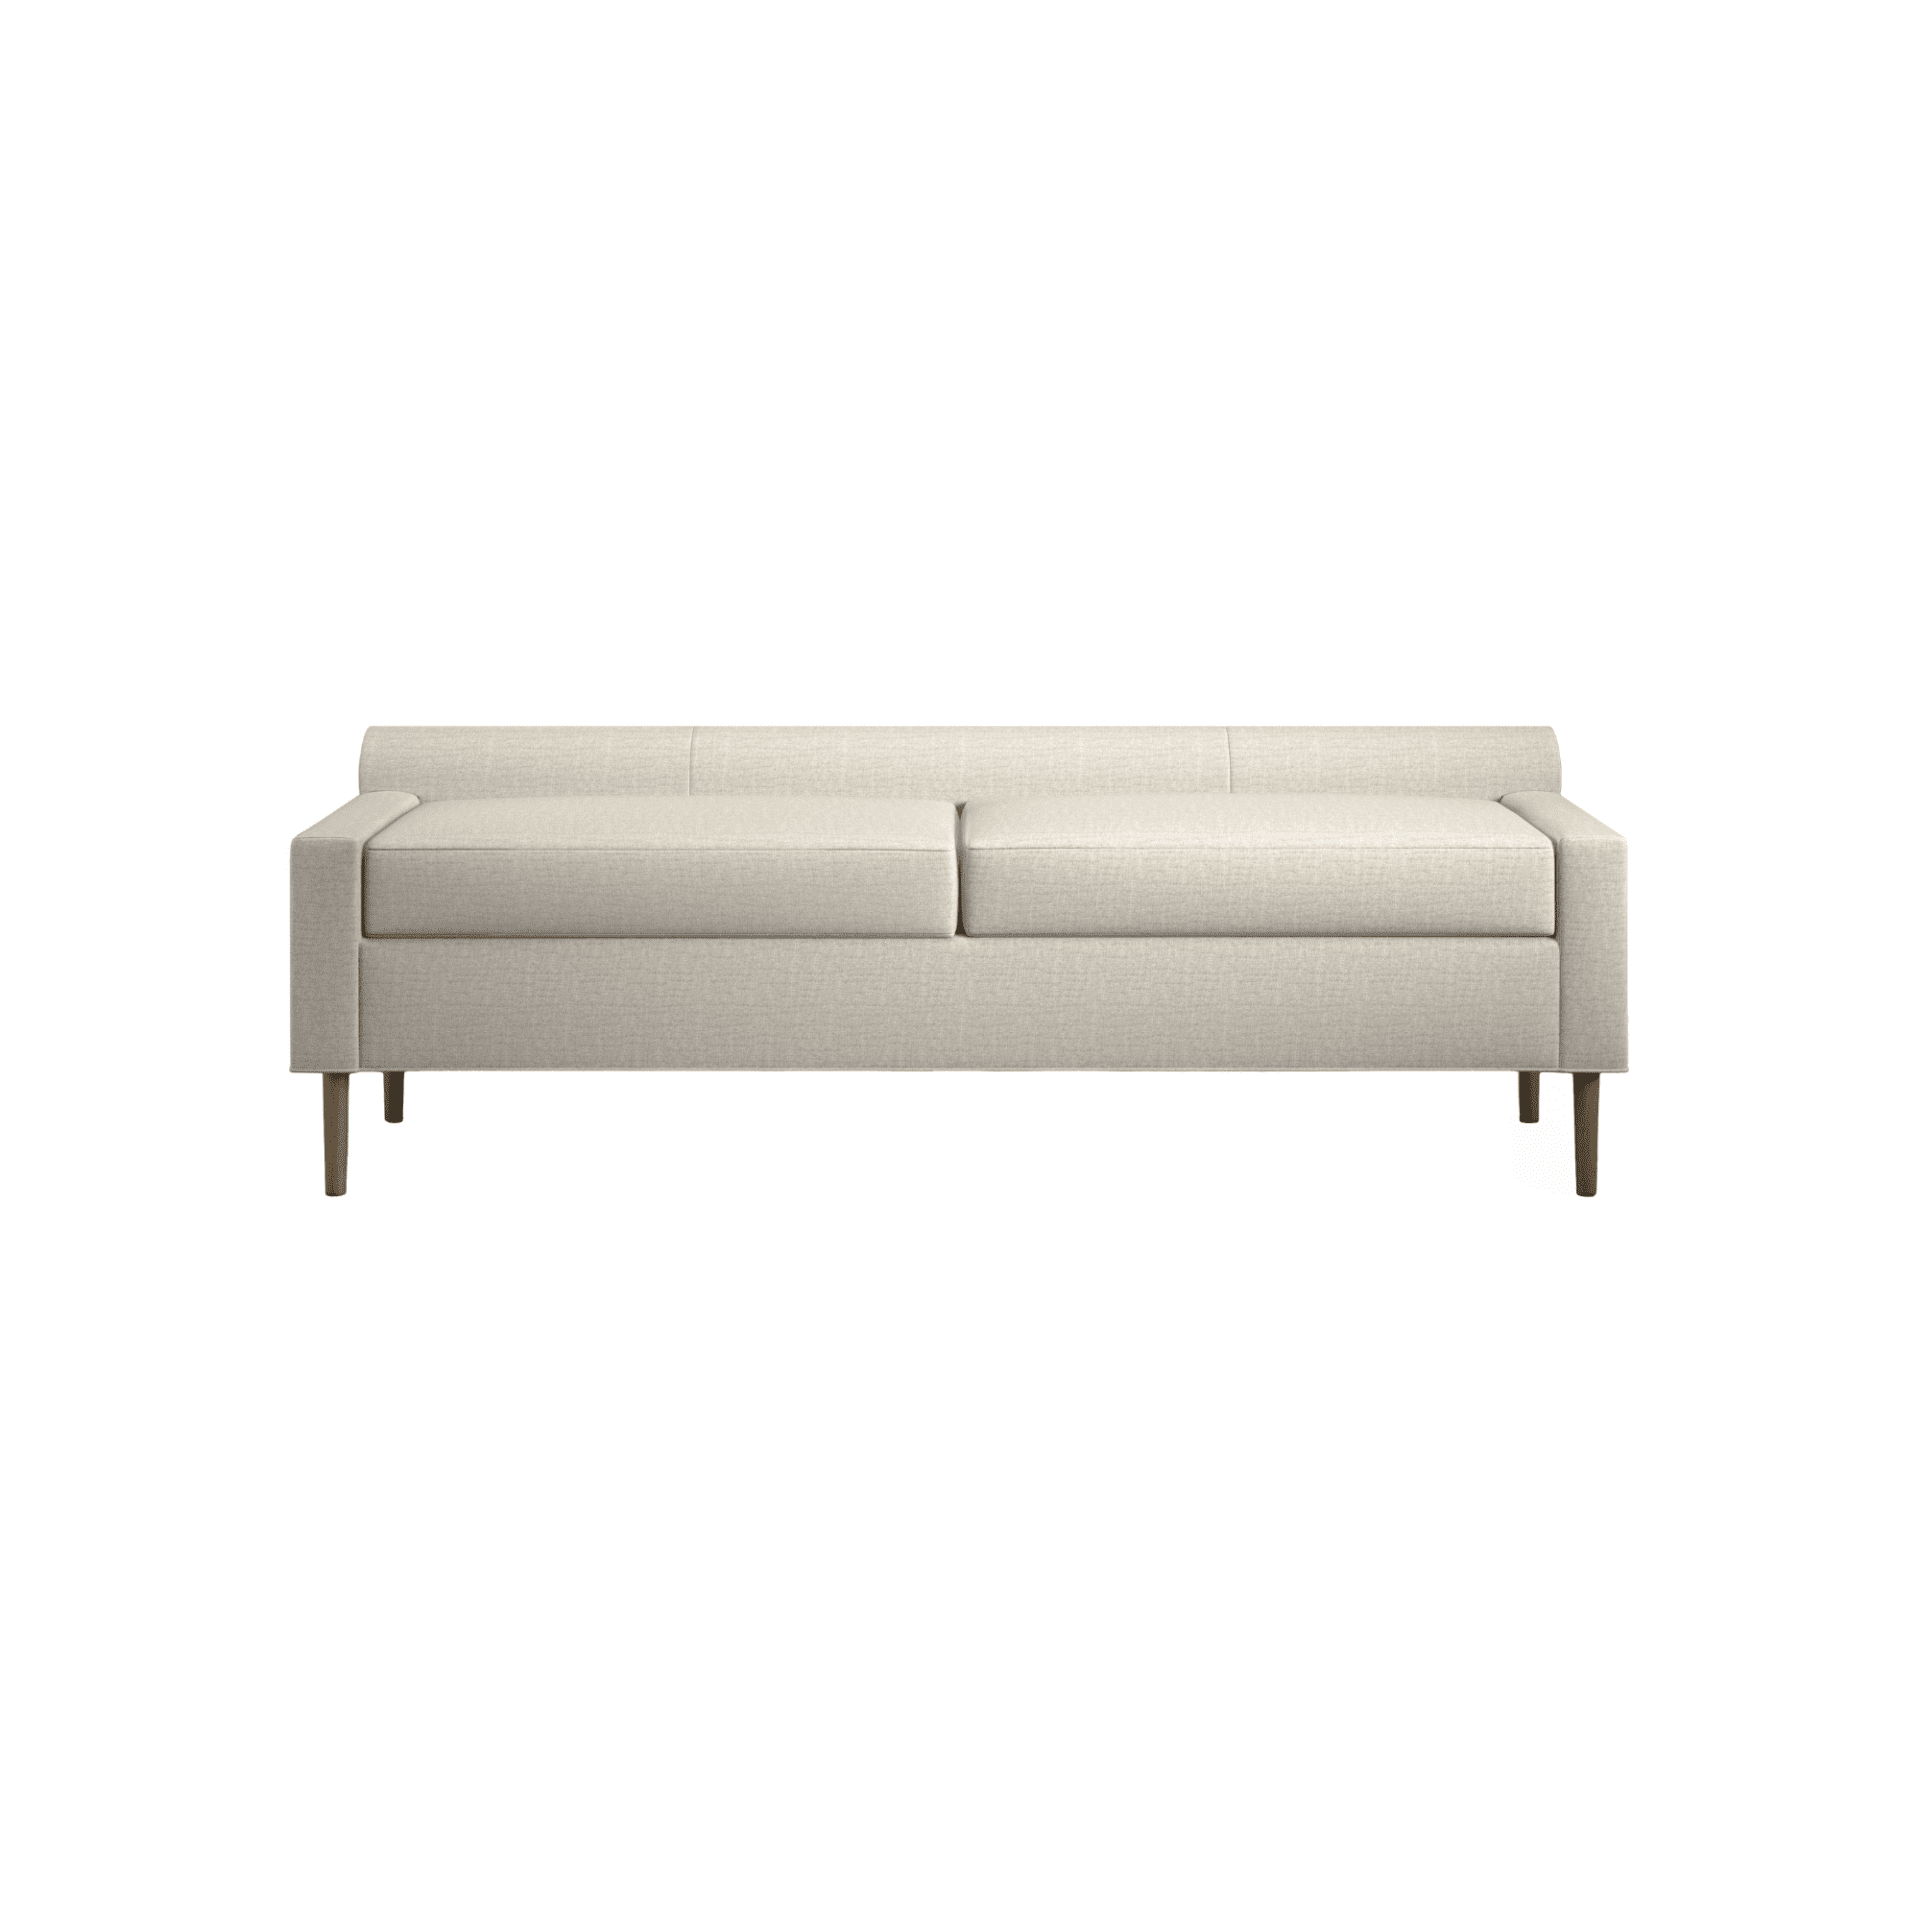 GIDEON 3- upholstered, luxury furniture